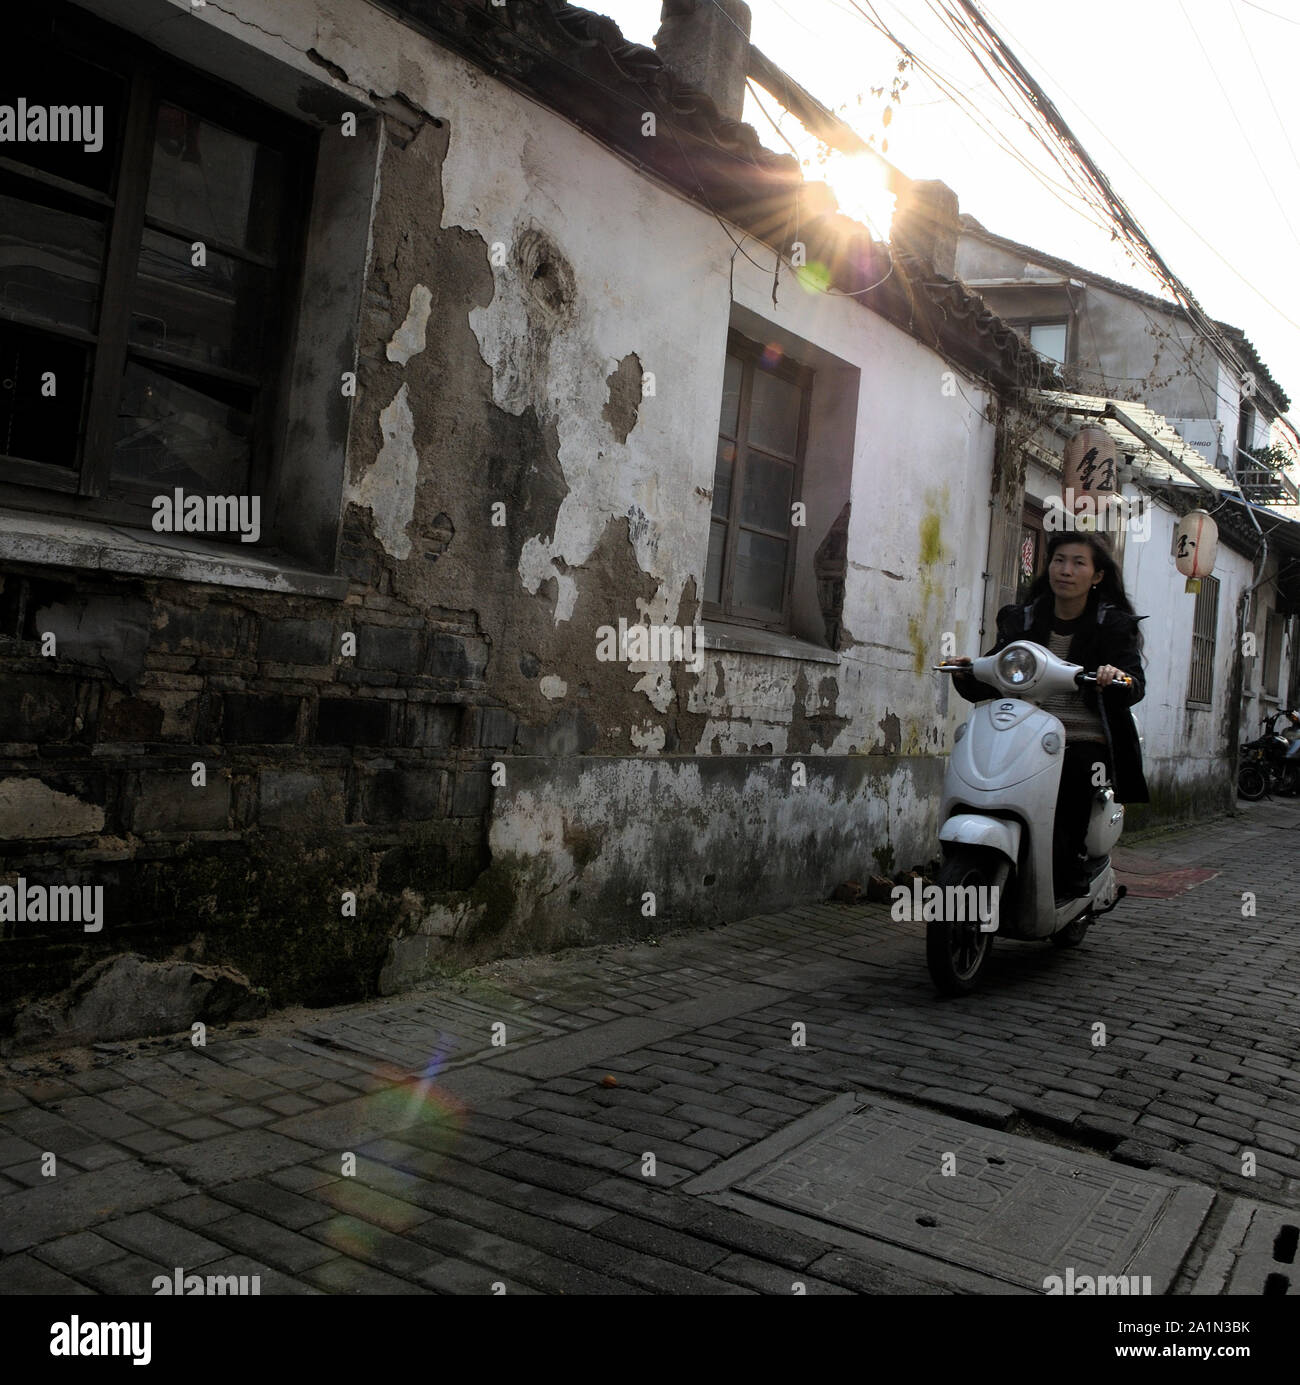 Una mujer está montando con un scooter a través de una calle en la vieja ciudad de Suzhou, China Foto de stock